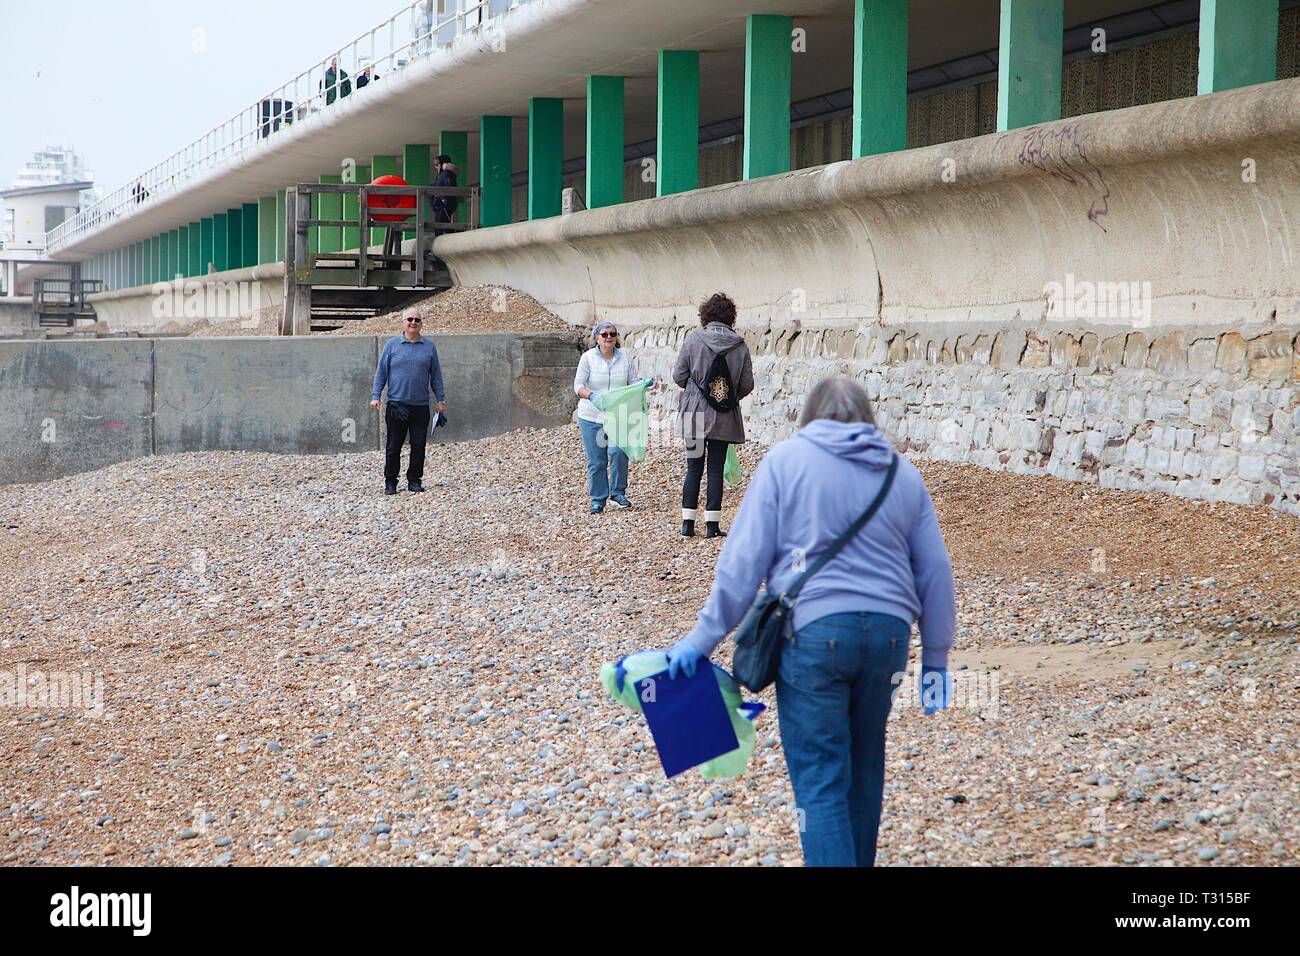 Hastings, East Sussex, Regno Unito. 06 apr, 2019. Volontari da tutto il paese si uniscono all'inizio di aprile per pulire una spiaggia vicino a voi. Quest'anno, volontari da Hastings e le aree circostanti si incontrano a Hastings pier dalle 10.30. Persone di tutte le provenienze sono incoraggiati a venire giù e dedicare un po' di tempo per la pulizia della spiaggia di plastica principalmente dell'inquinamento. Hastings pulizia spiagge dalla bottiglia vicolo. ©Paolo Lawrenson 2019, Photo credit: Paolo Lawrenson/Alamy Live News Foto Stock